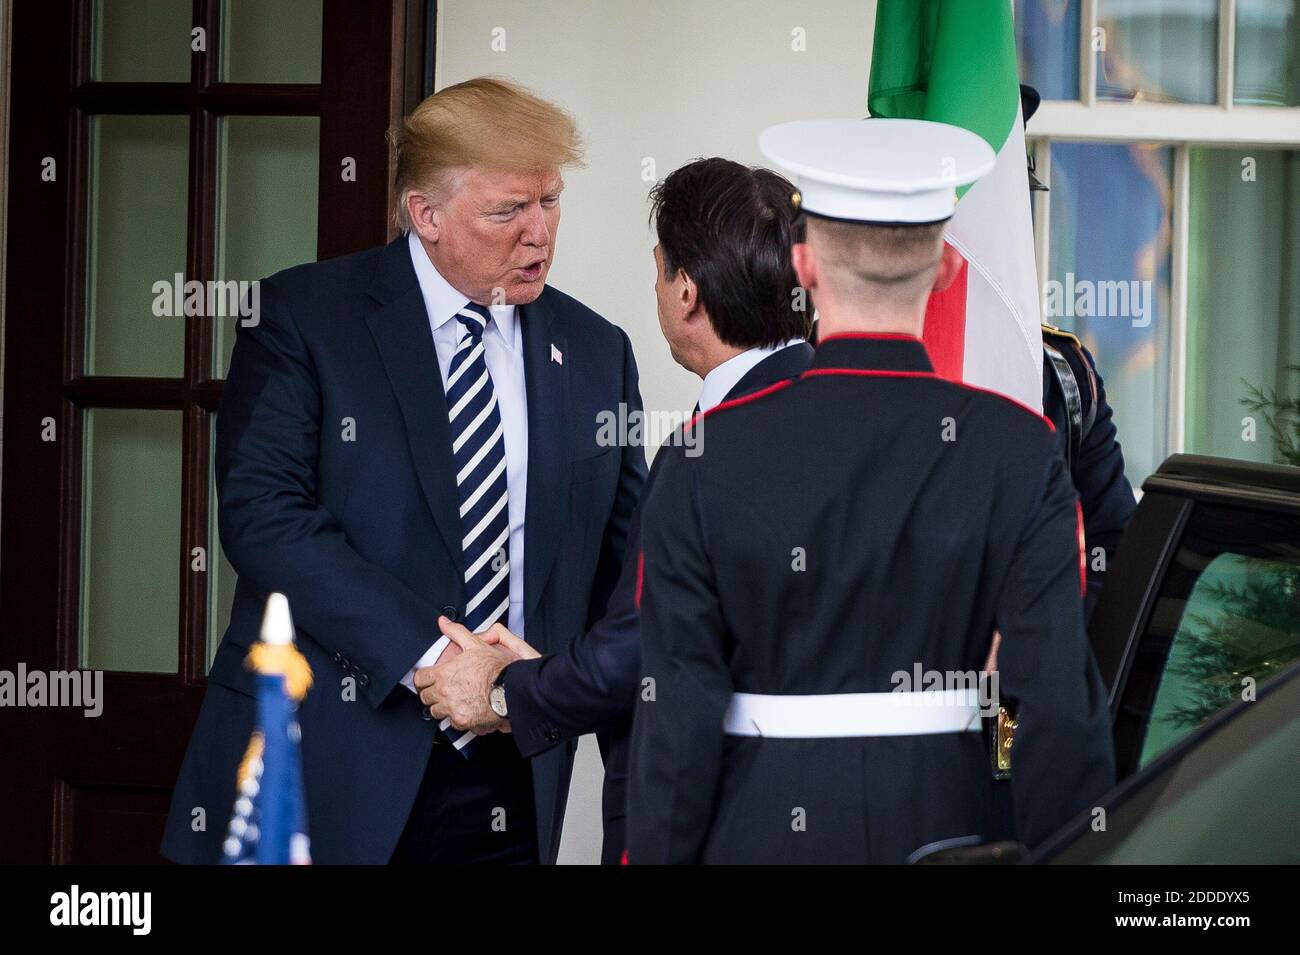 El presidente ESTADOUNIDENSE Donald Trump saluda al primer ministro Giuseppe Conte, de Italia, en la Casa Blanca el 30 de julio de 2018 en Washington, D.C. Foto de Pete Marovich/ABACAUSA.com Foto de stock